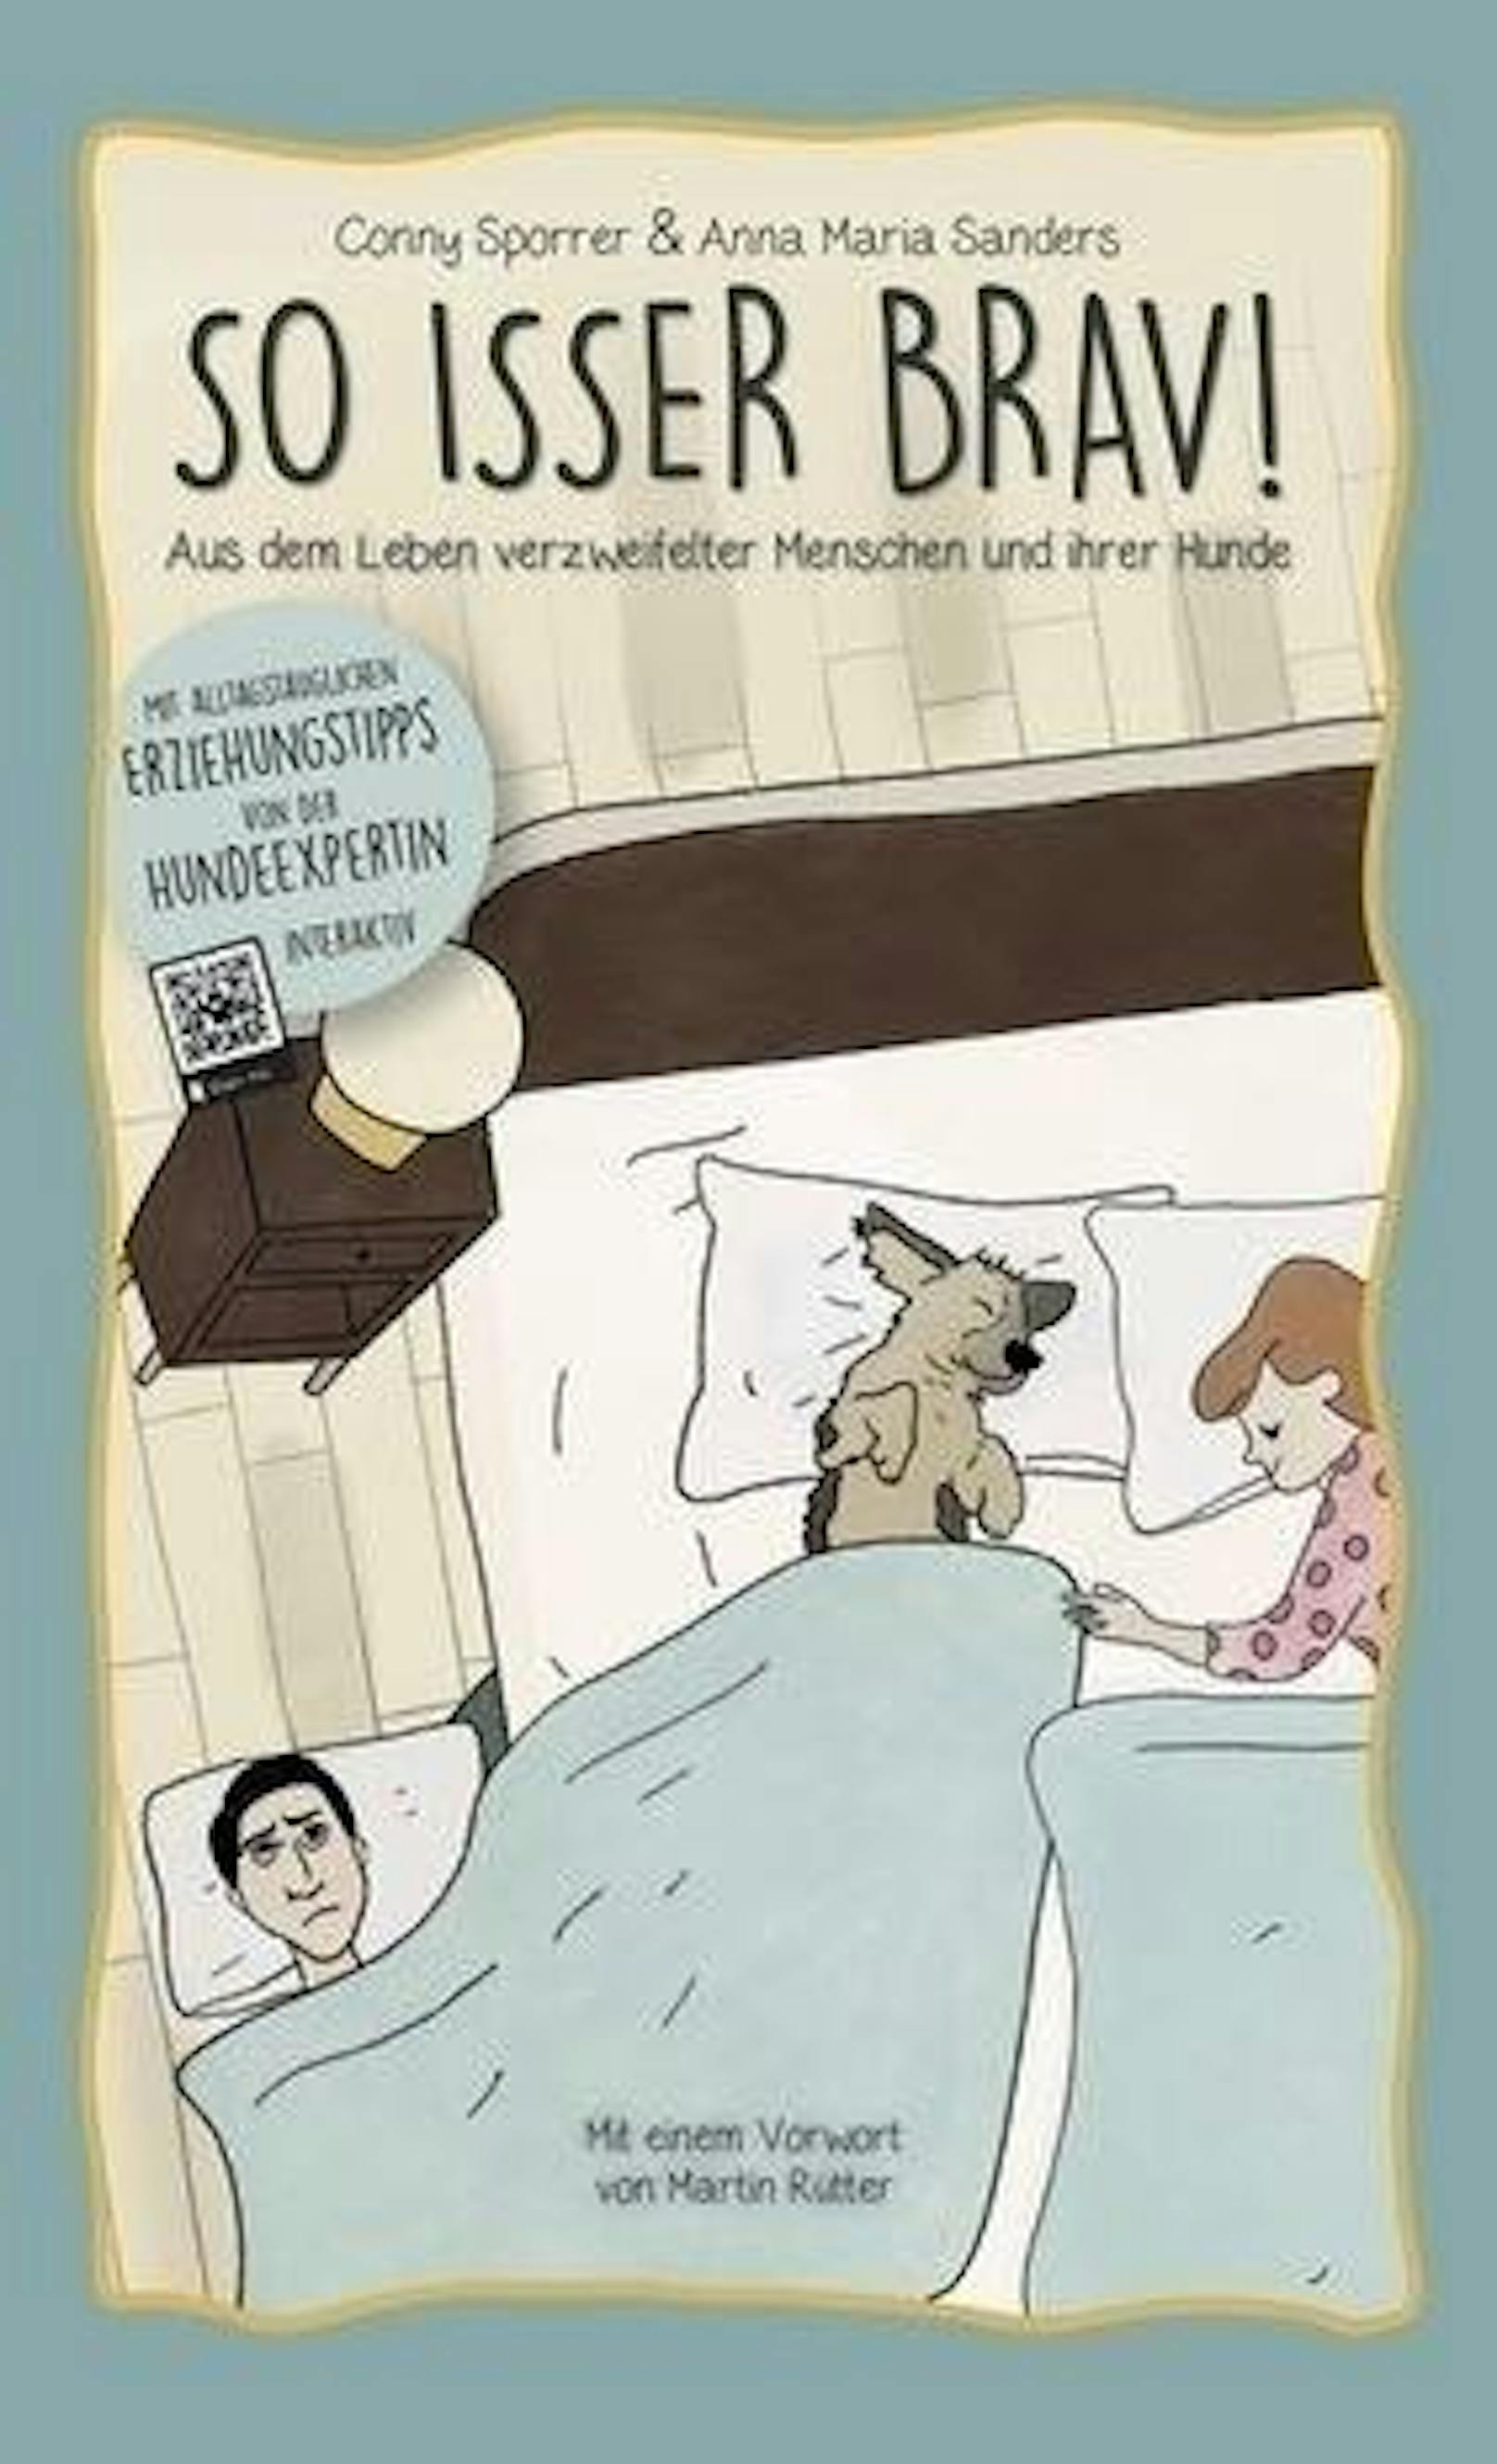 2018 erschien Conny Sporrers erster Roman in Ratgeberform: "SO ISSER BRAV! Aus dem Leben verzweifelter Menschen und ihrer Hunde" (<a href="https://www.martinruetter.com/wien/so-isser-brav/das-buch/" target="_blank">www.soisserbrav.com</a>).